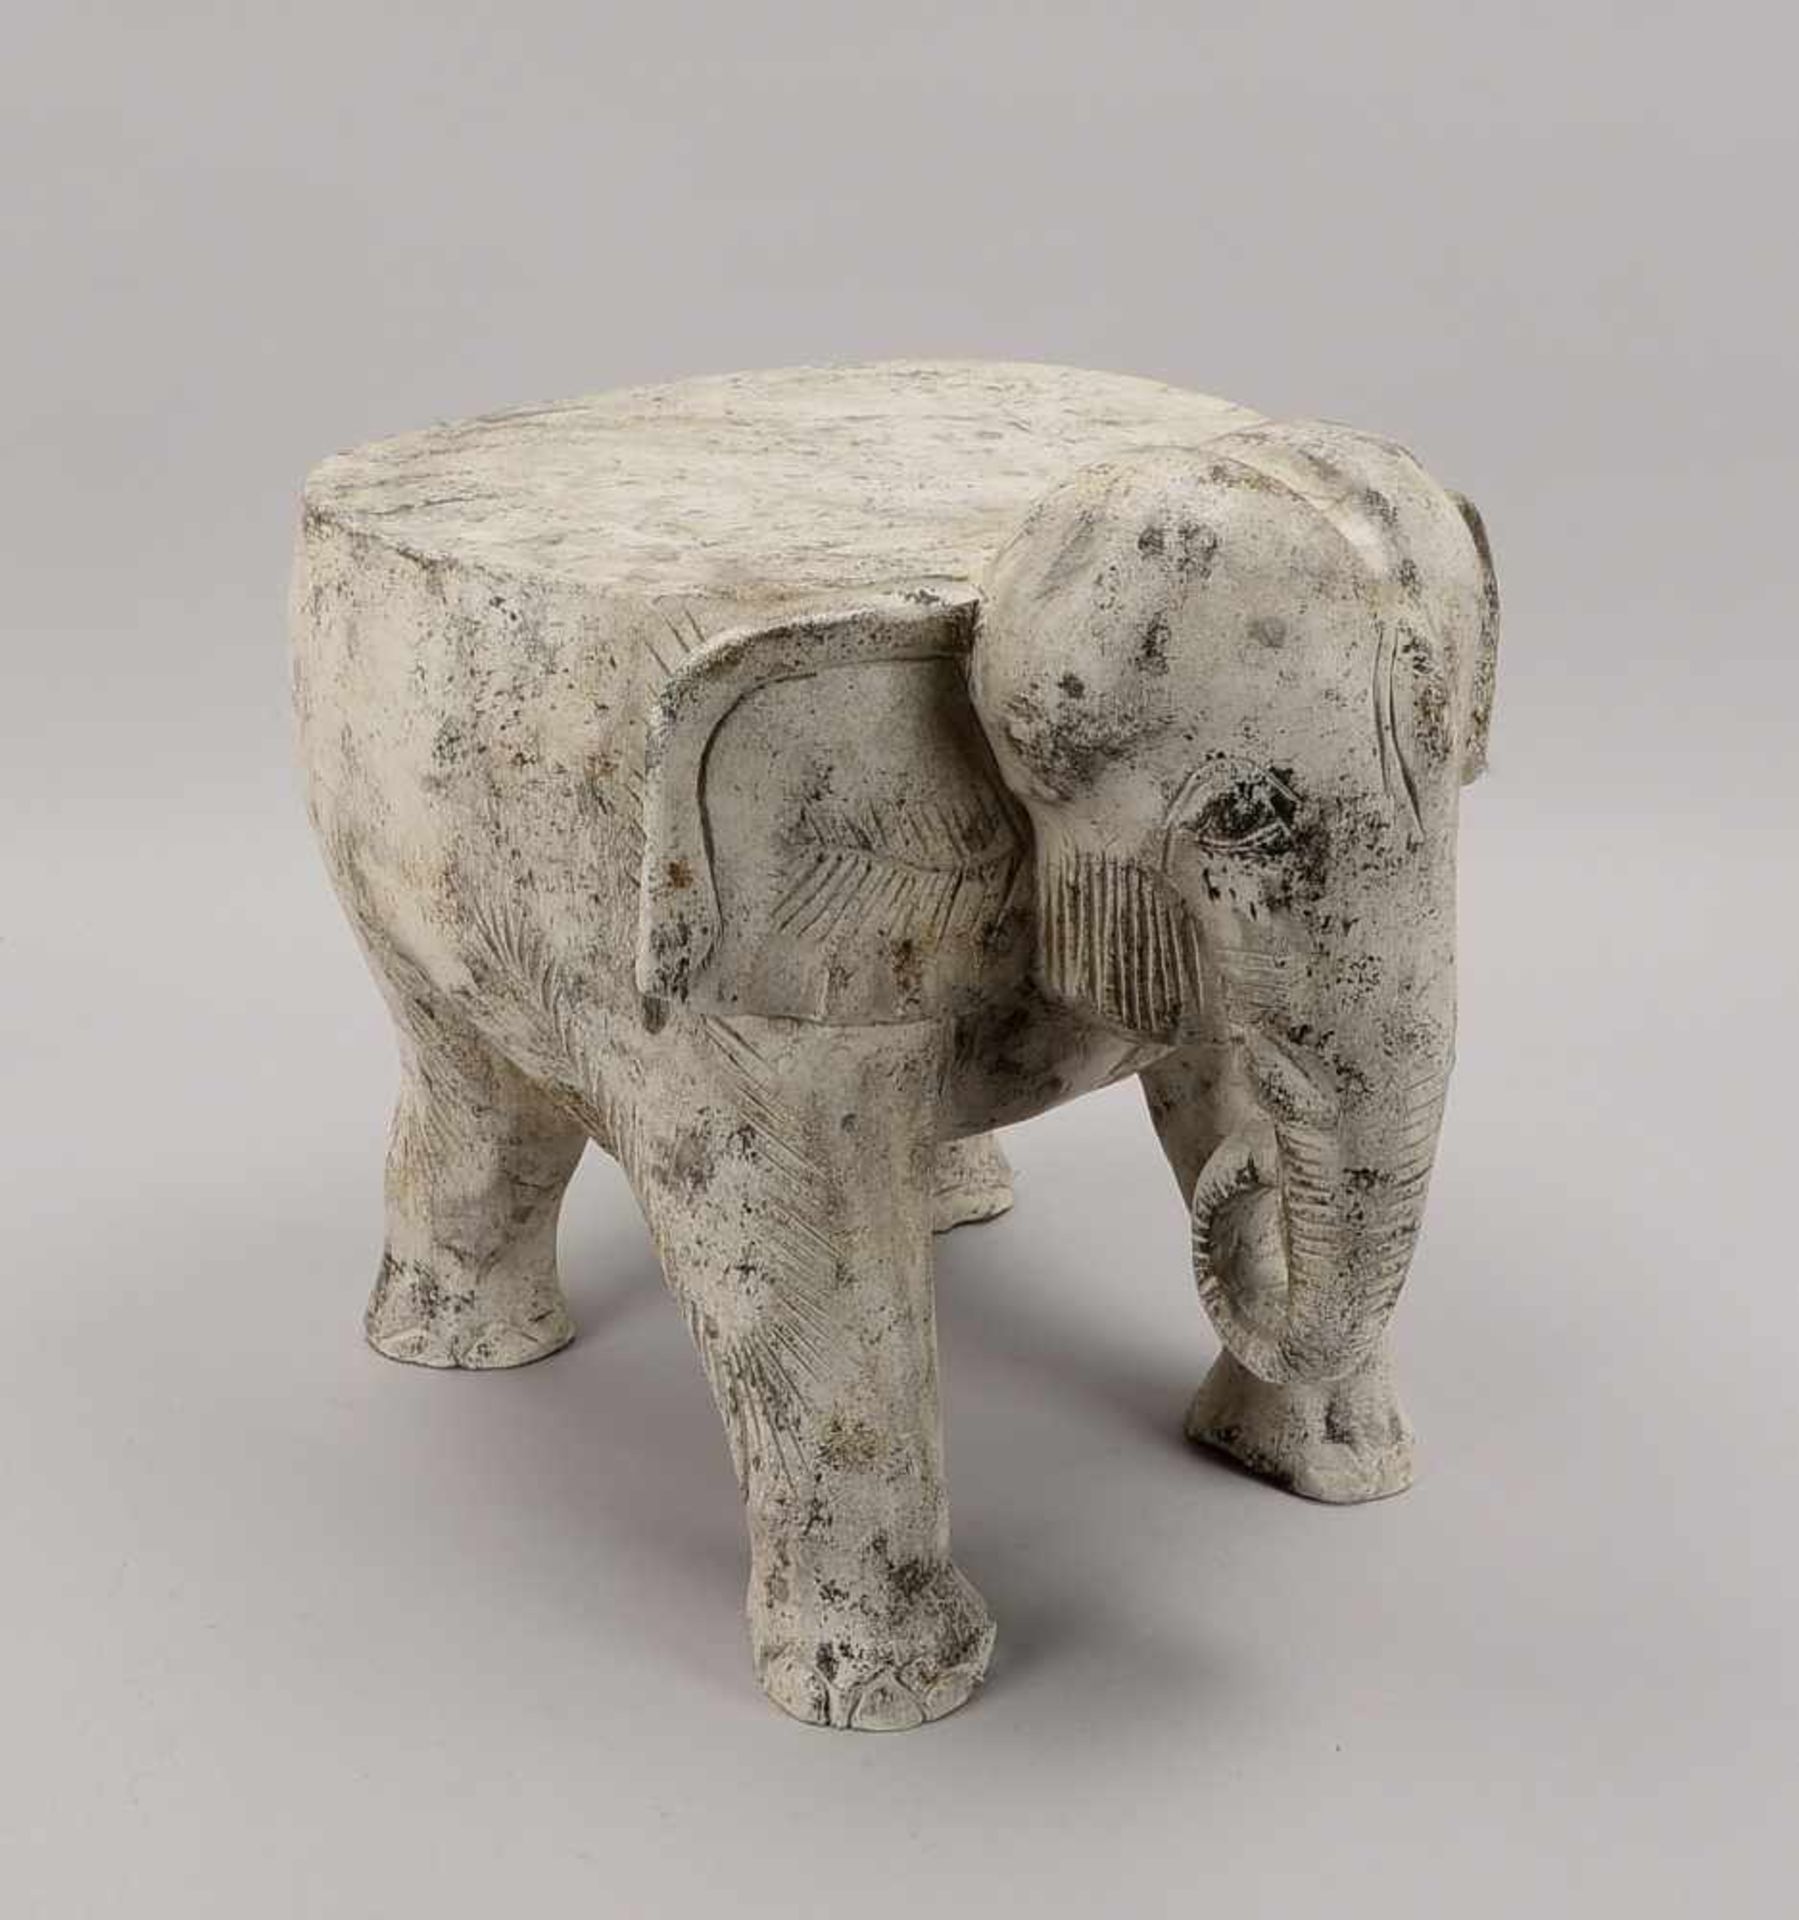 Blumenhocker, 'Elefant', Holz weiß gefasst; Maße 41 x 44 x 37 cm - Bild 2 aus 2